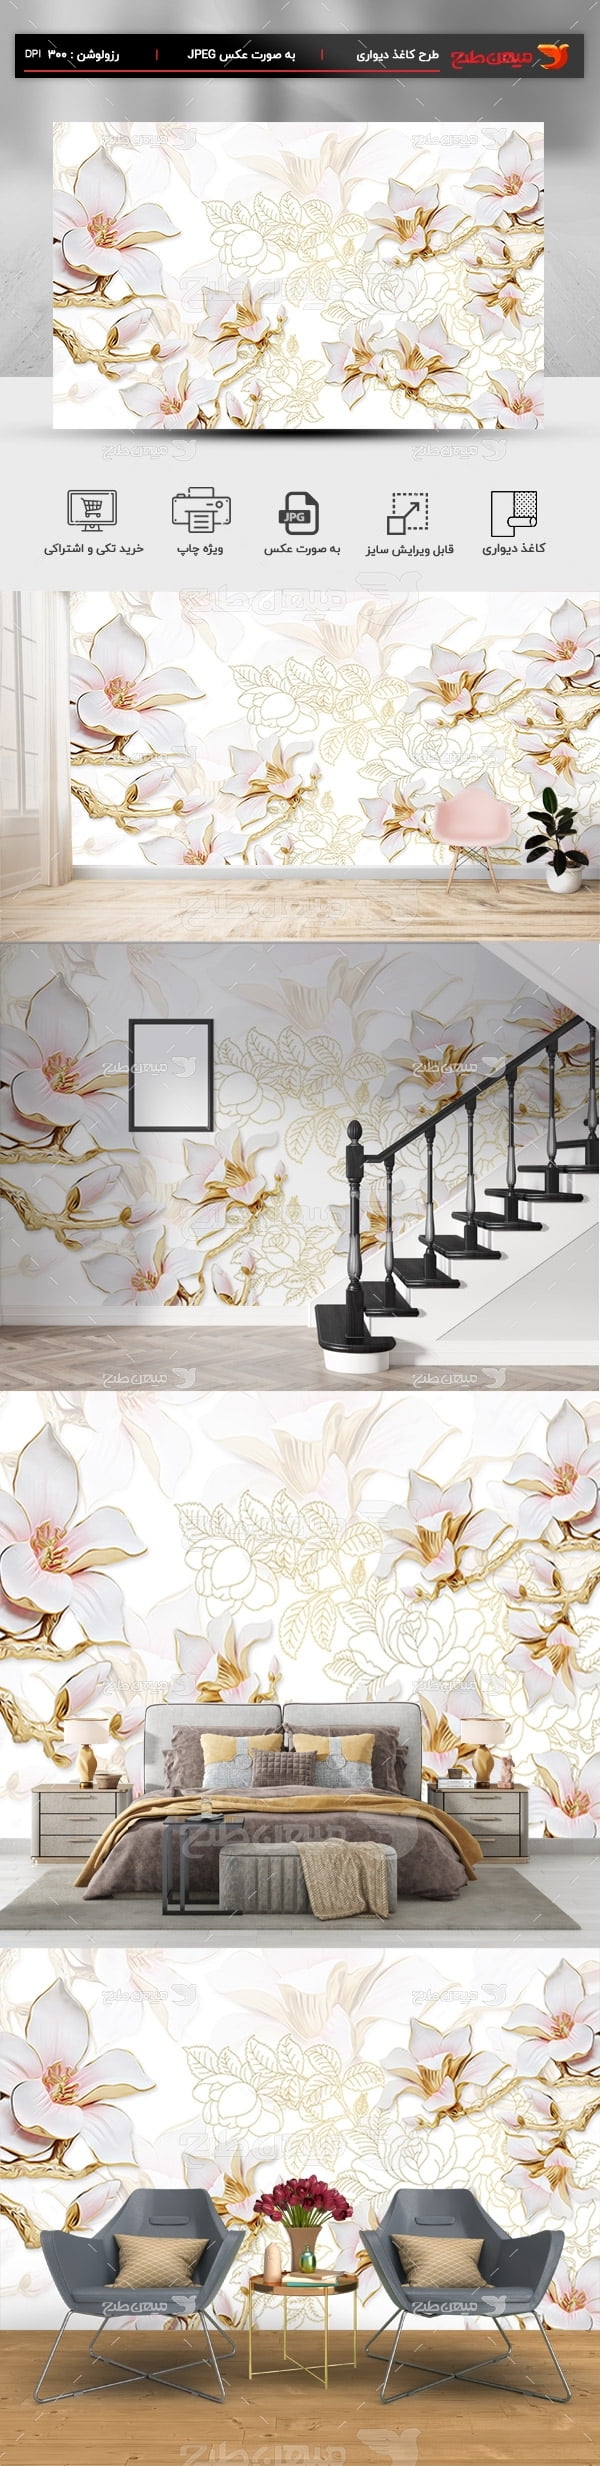 پوستر کاغذ دیواری سه بعدی طرح گل  و برگ سفید